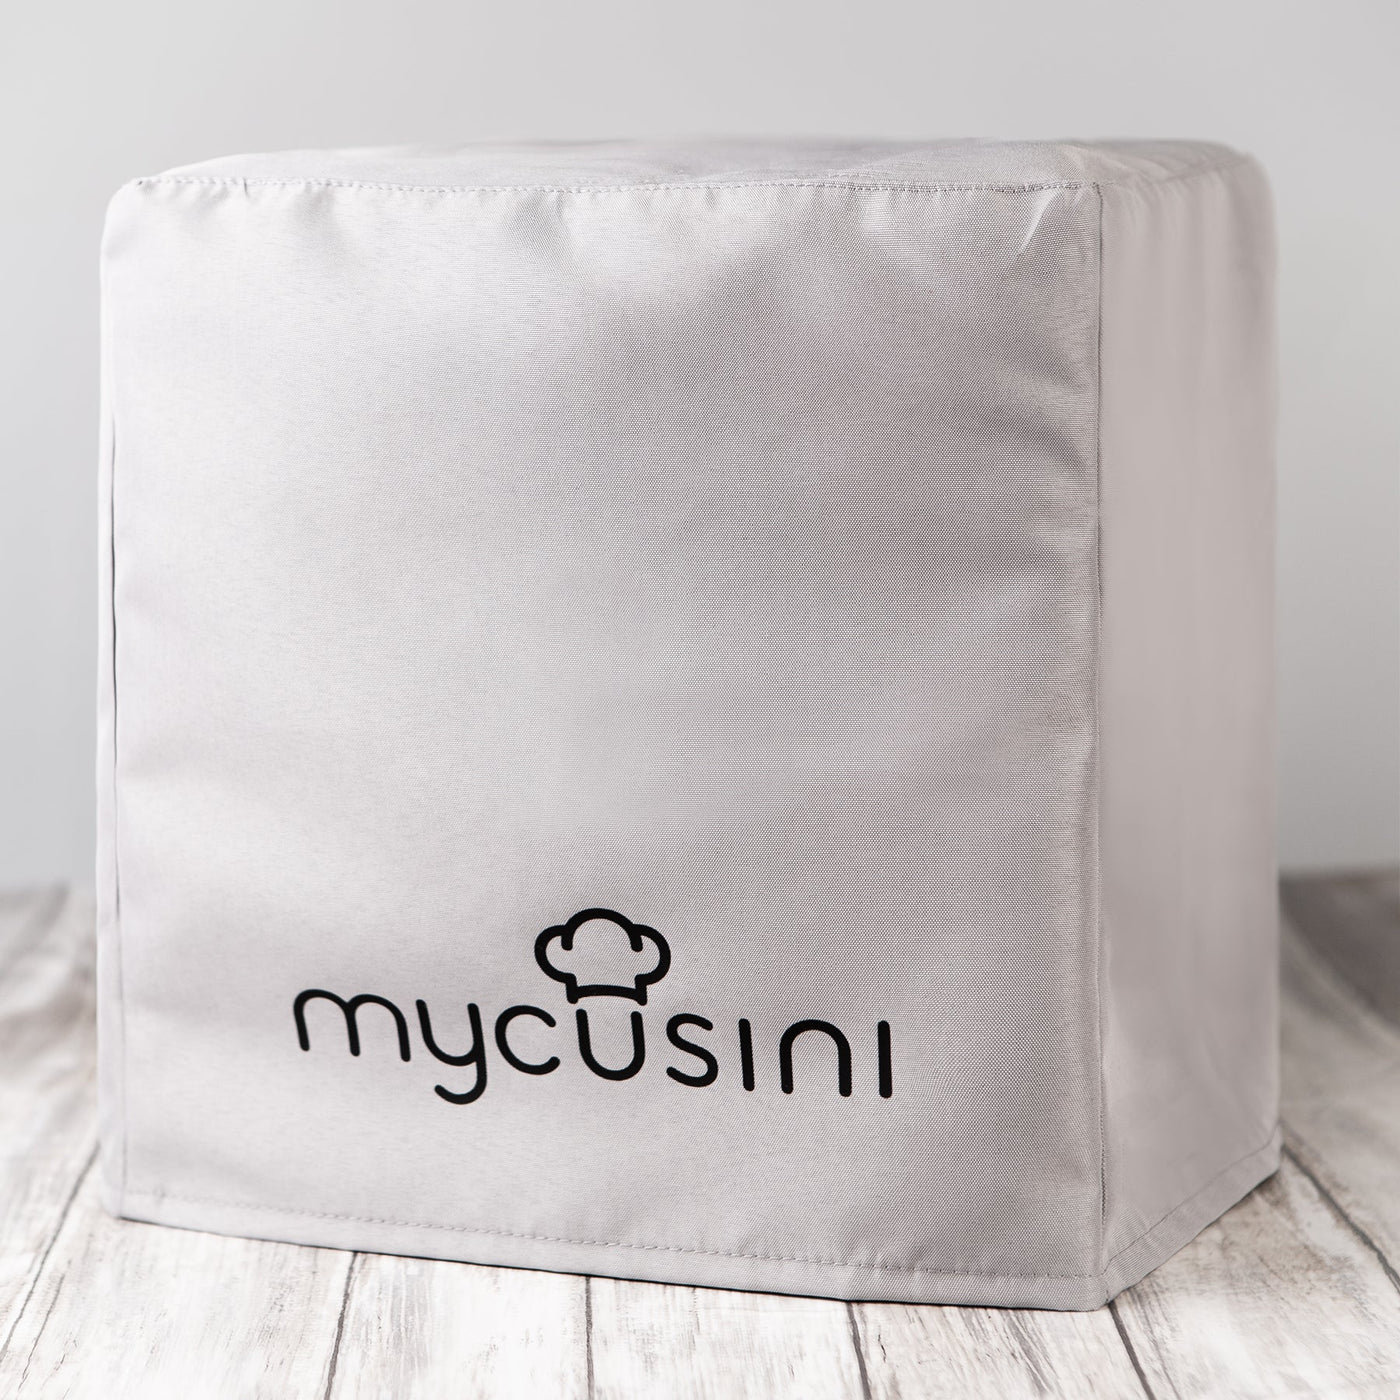 mycusini® 2.0 Abdeckhaube - [3dmaterial-shop]